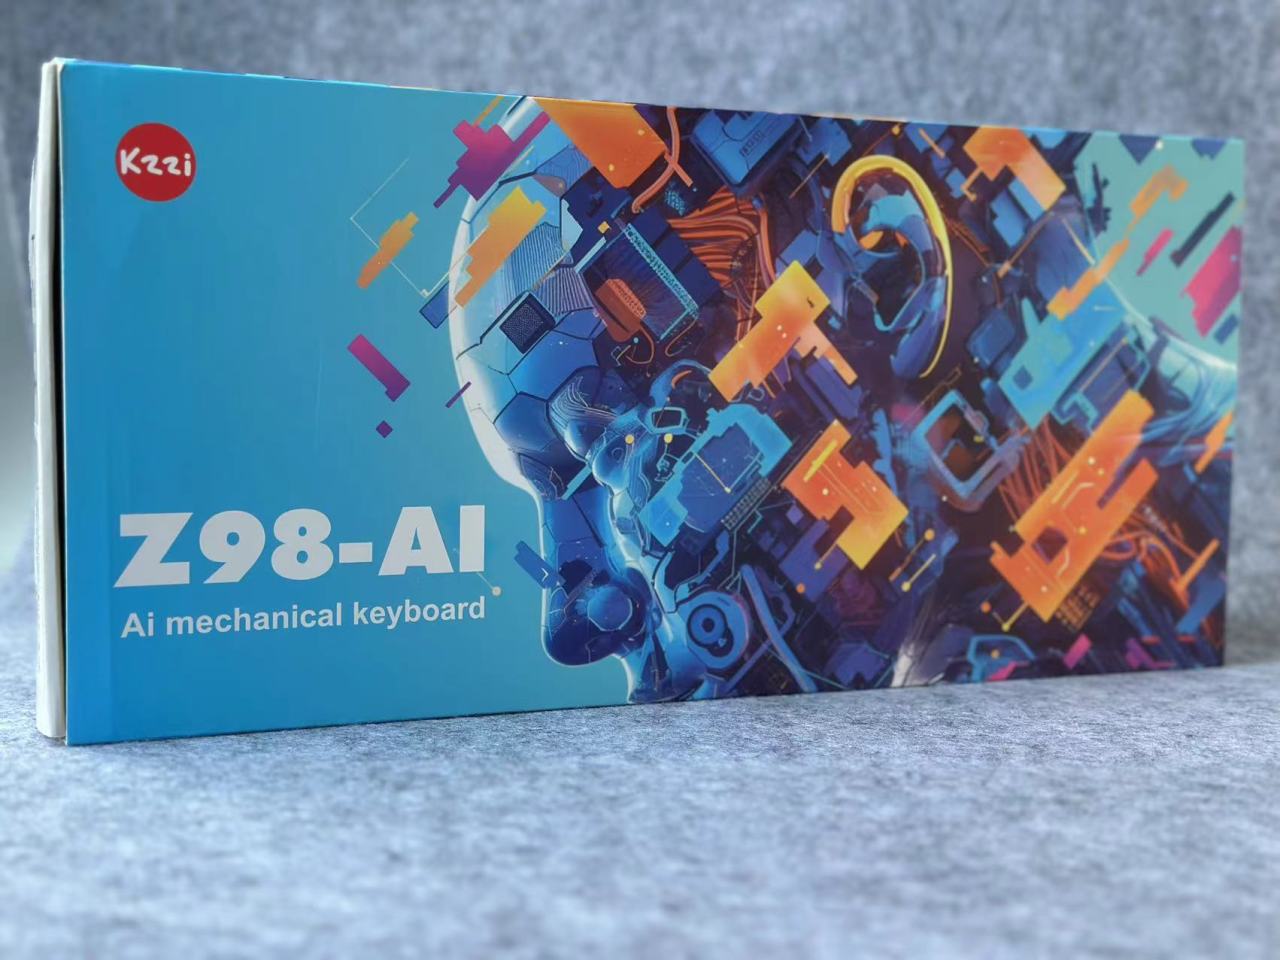 鍵盤的Ai賽道終於迎來了新品牌——珂芝Z98Ai